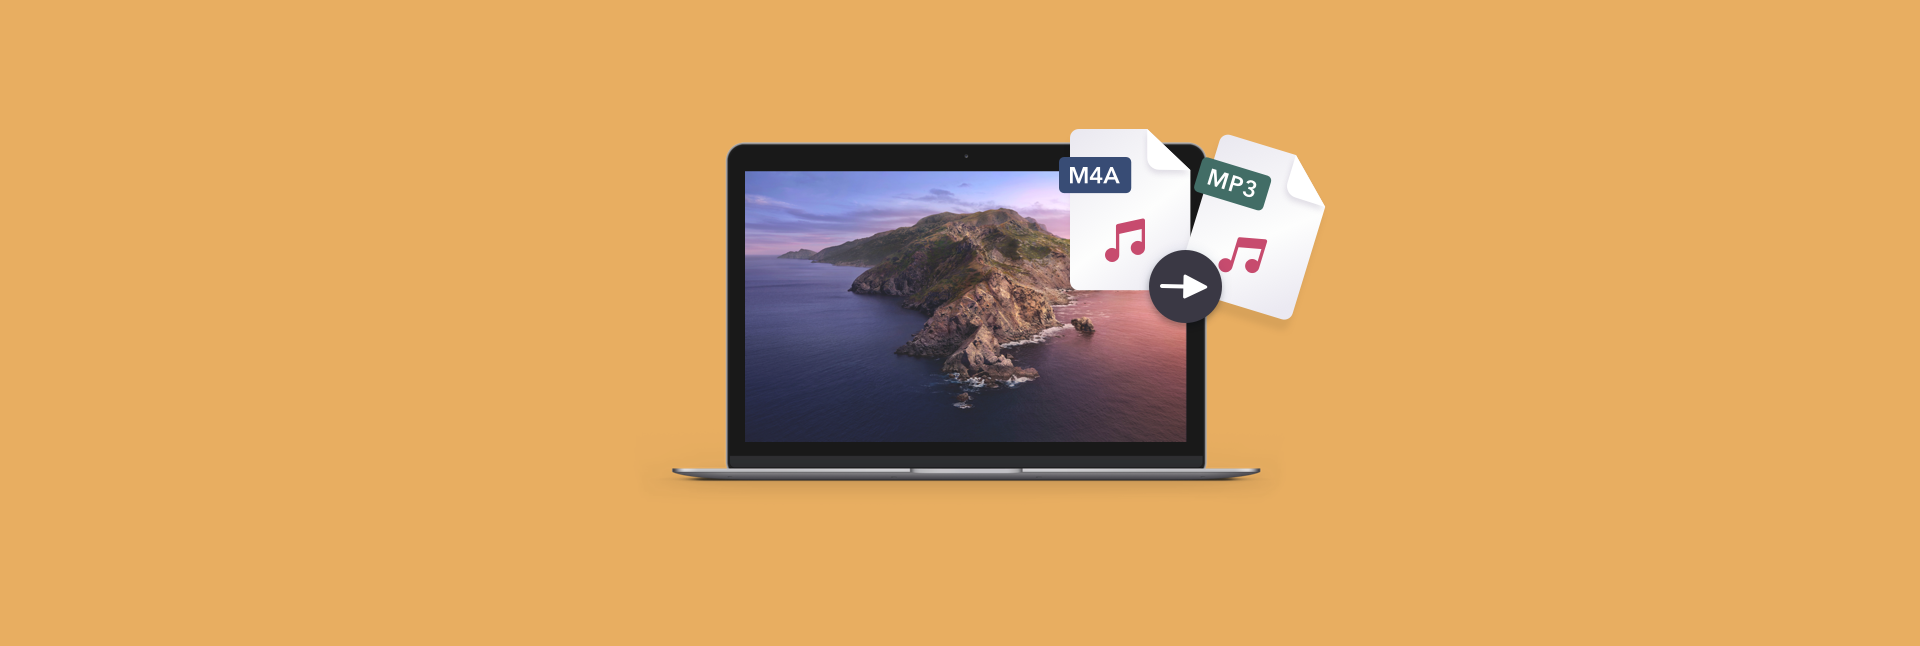 ægteskab Spænding med sig How To Convert M4A To MP3 On Mac In Seconds – Setapp